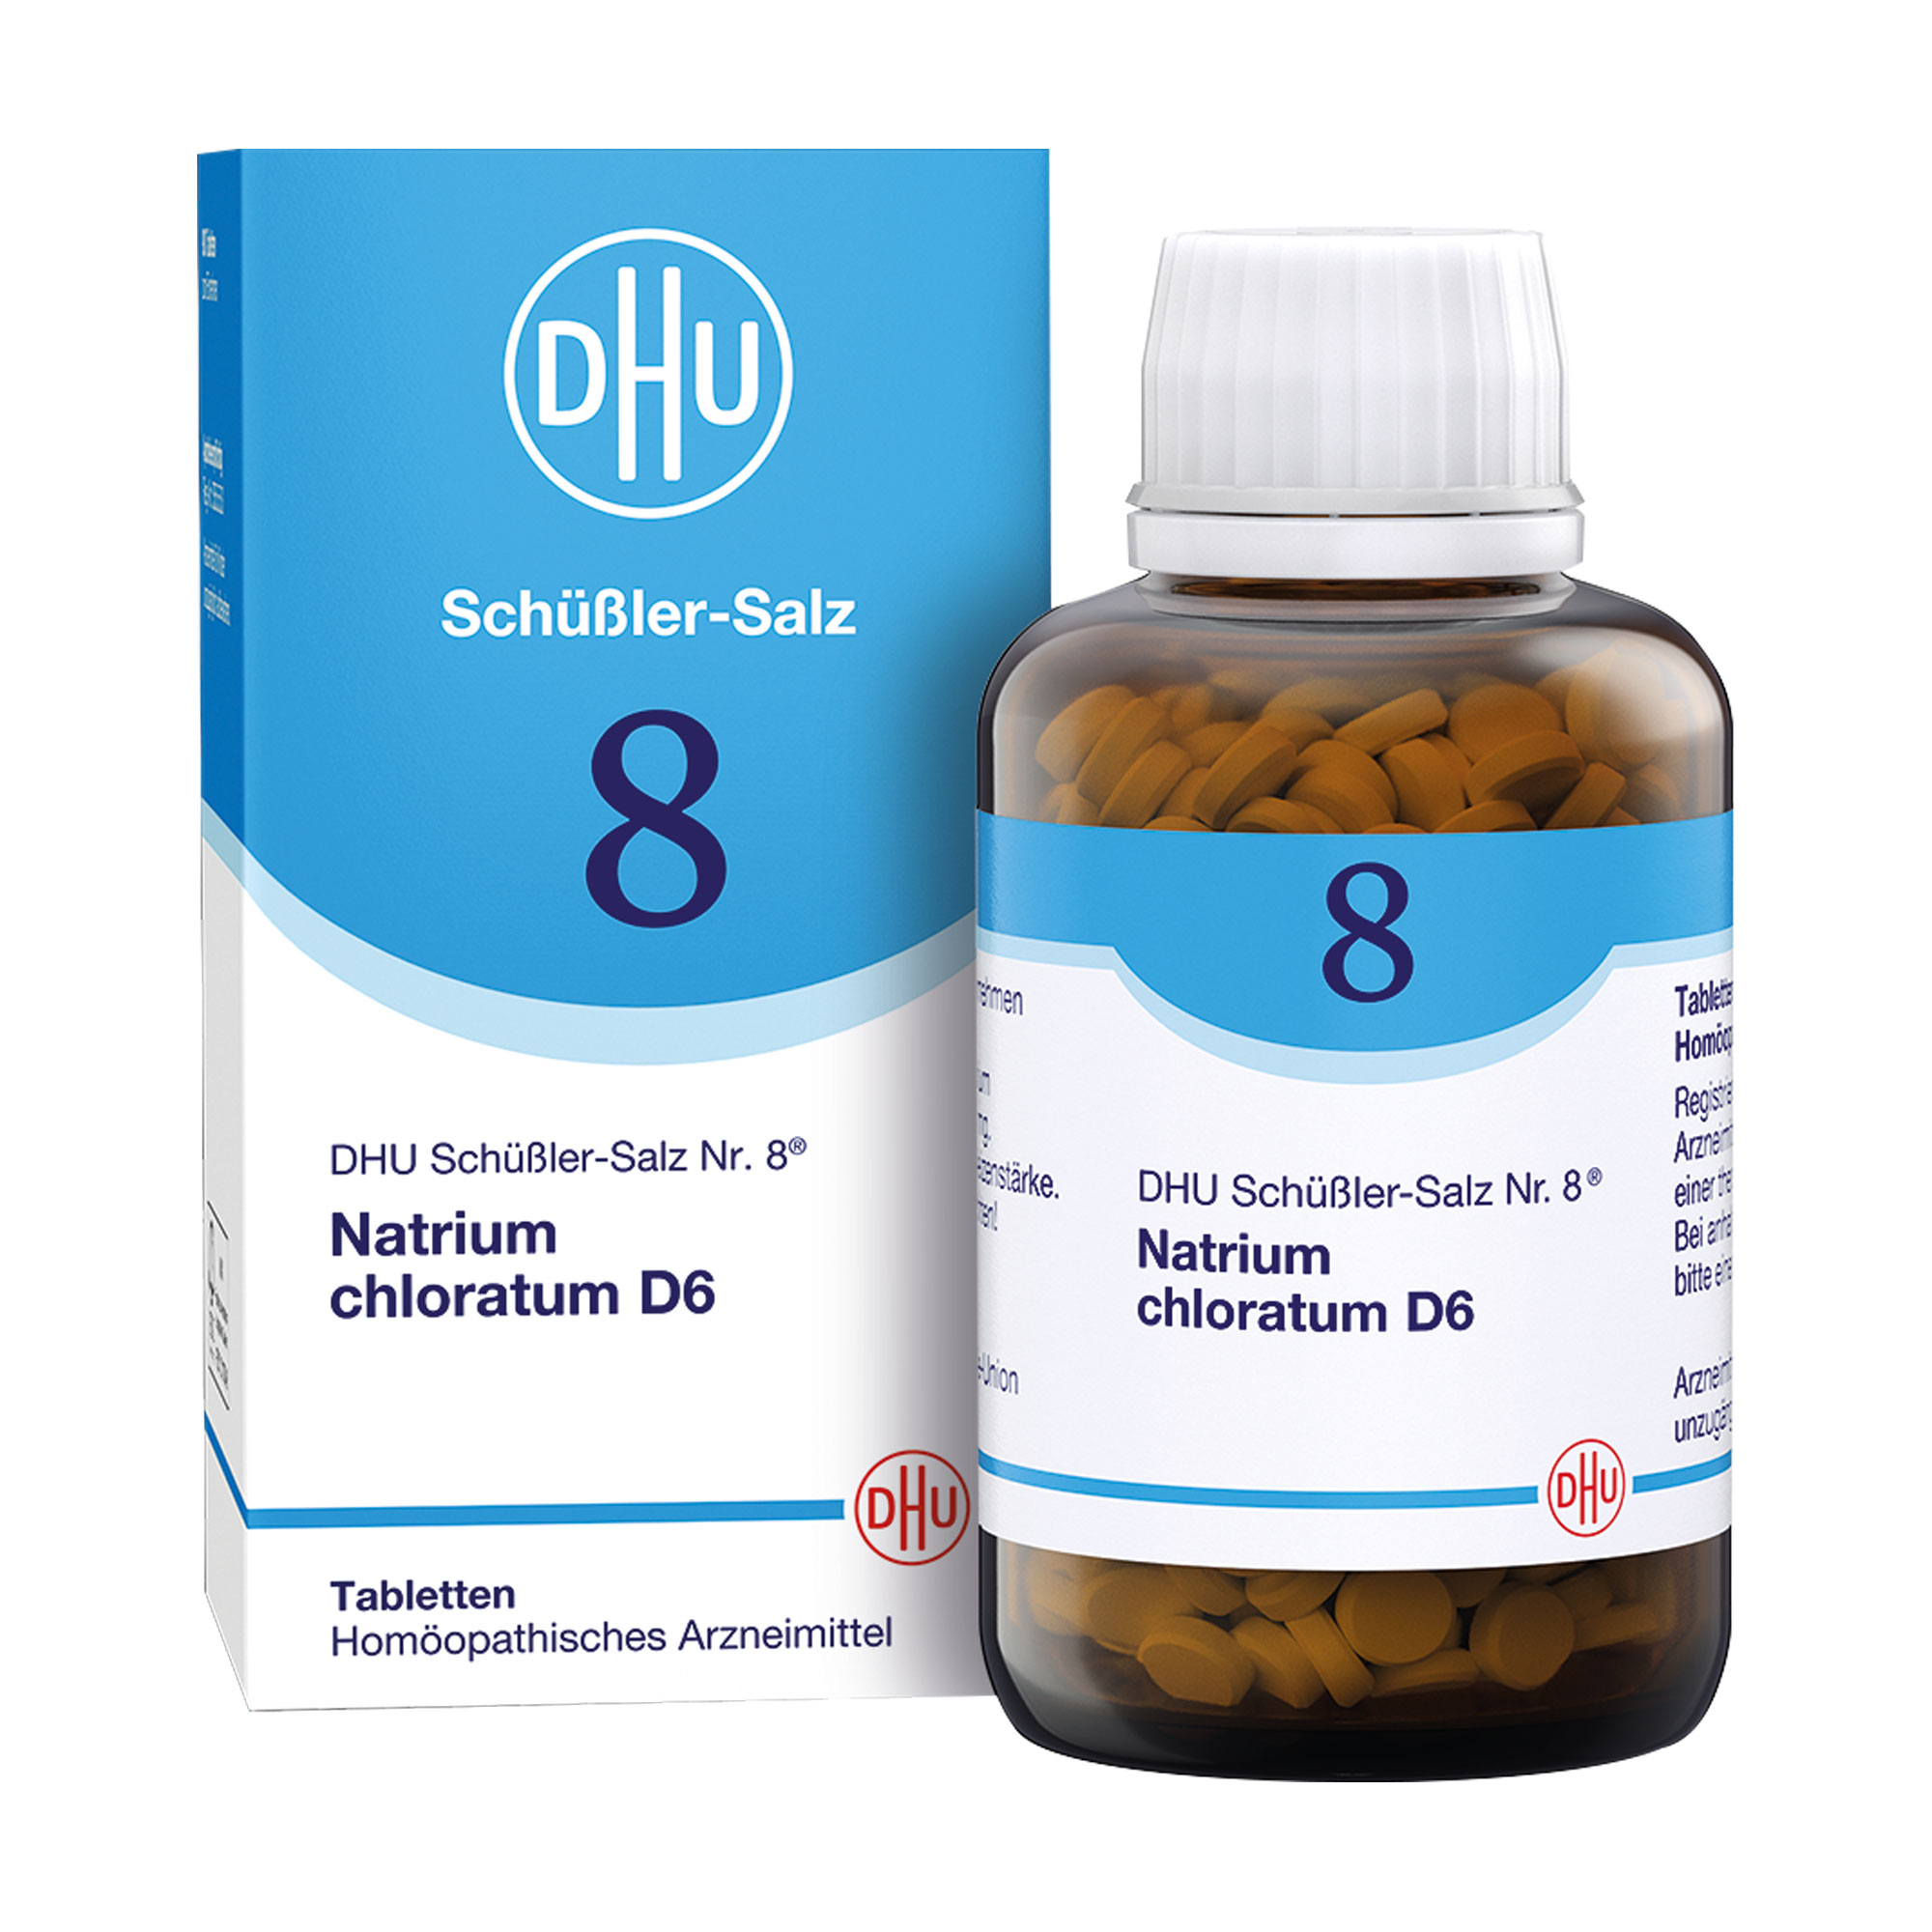 Homöopathisches Arzneimittel mit Natrium chloratum Trit. D6.